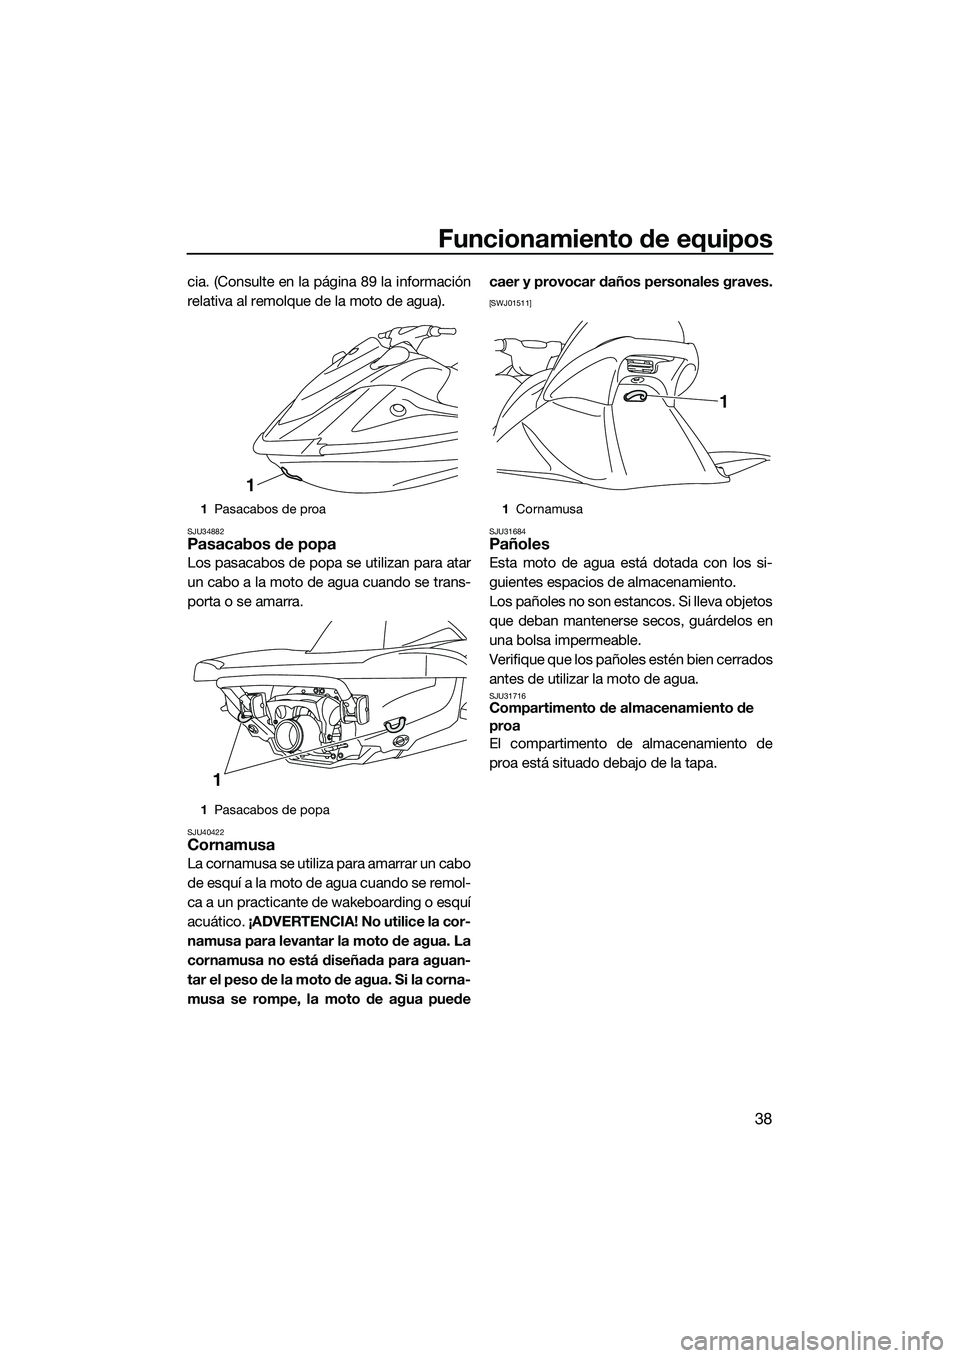 YAMAHA V1 2015  Manuale de Empleo (in Spanish) Funcionamiento de equipos
38
cia. (Consulte en la página 89 la información
relativa al remolque de la moto de agua).
SJU34882Pasacabos de popa
Los pasacabos de popa se utilizan para atar
un cabo a l